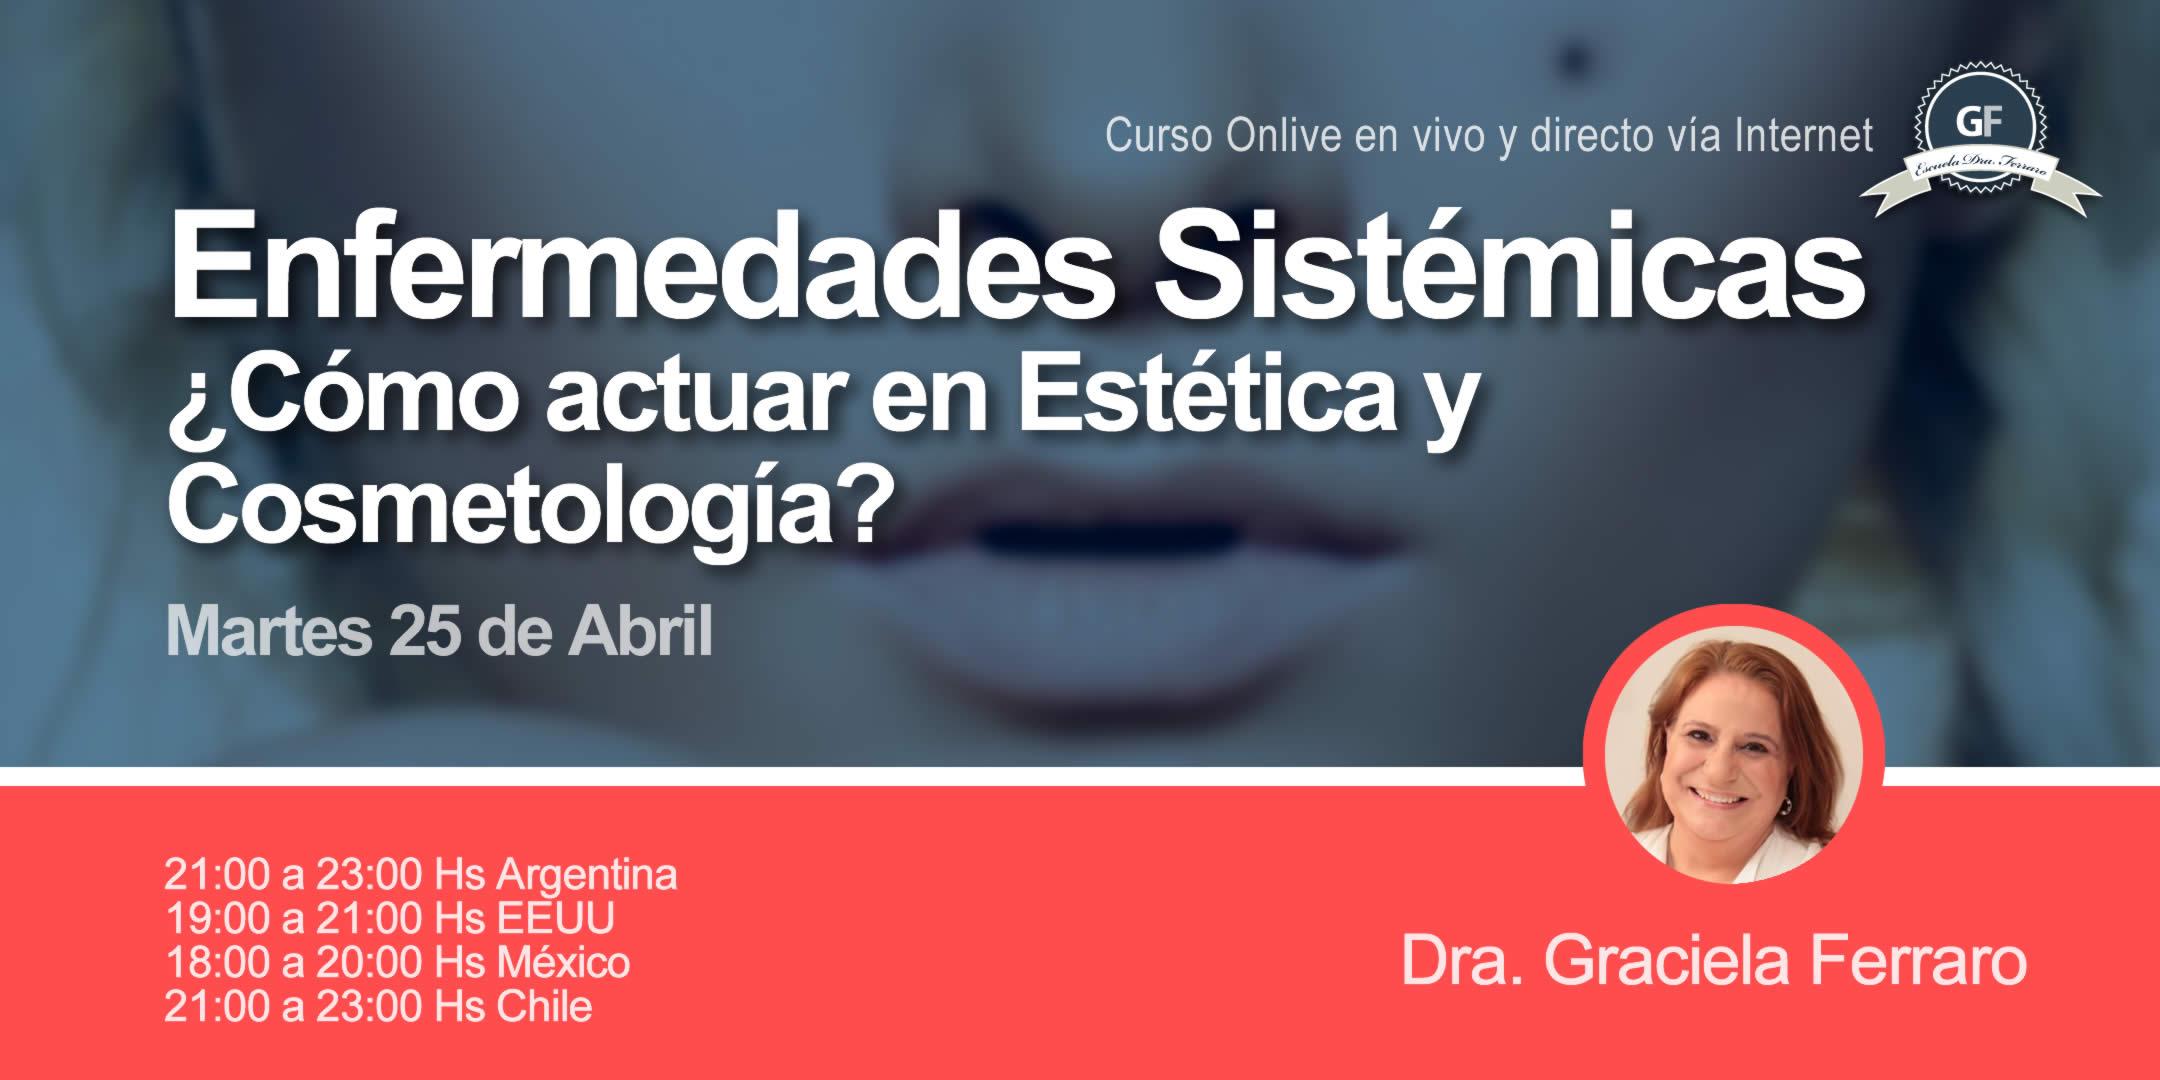 Enfermedades sistémicas: ¿Cómo actuar en Estética y Cosmetología?